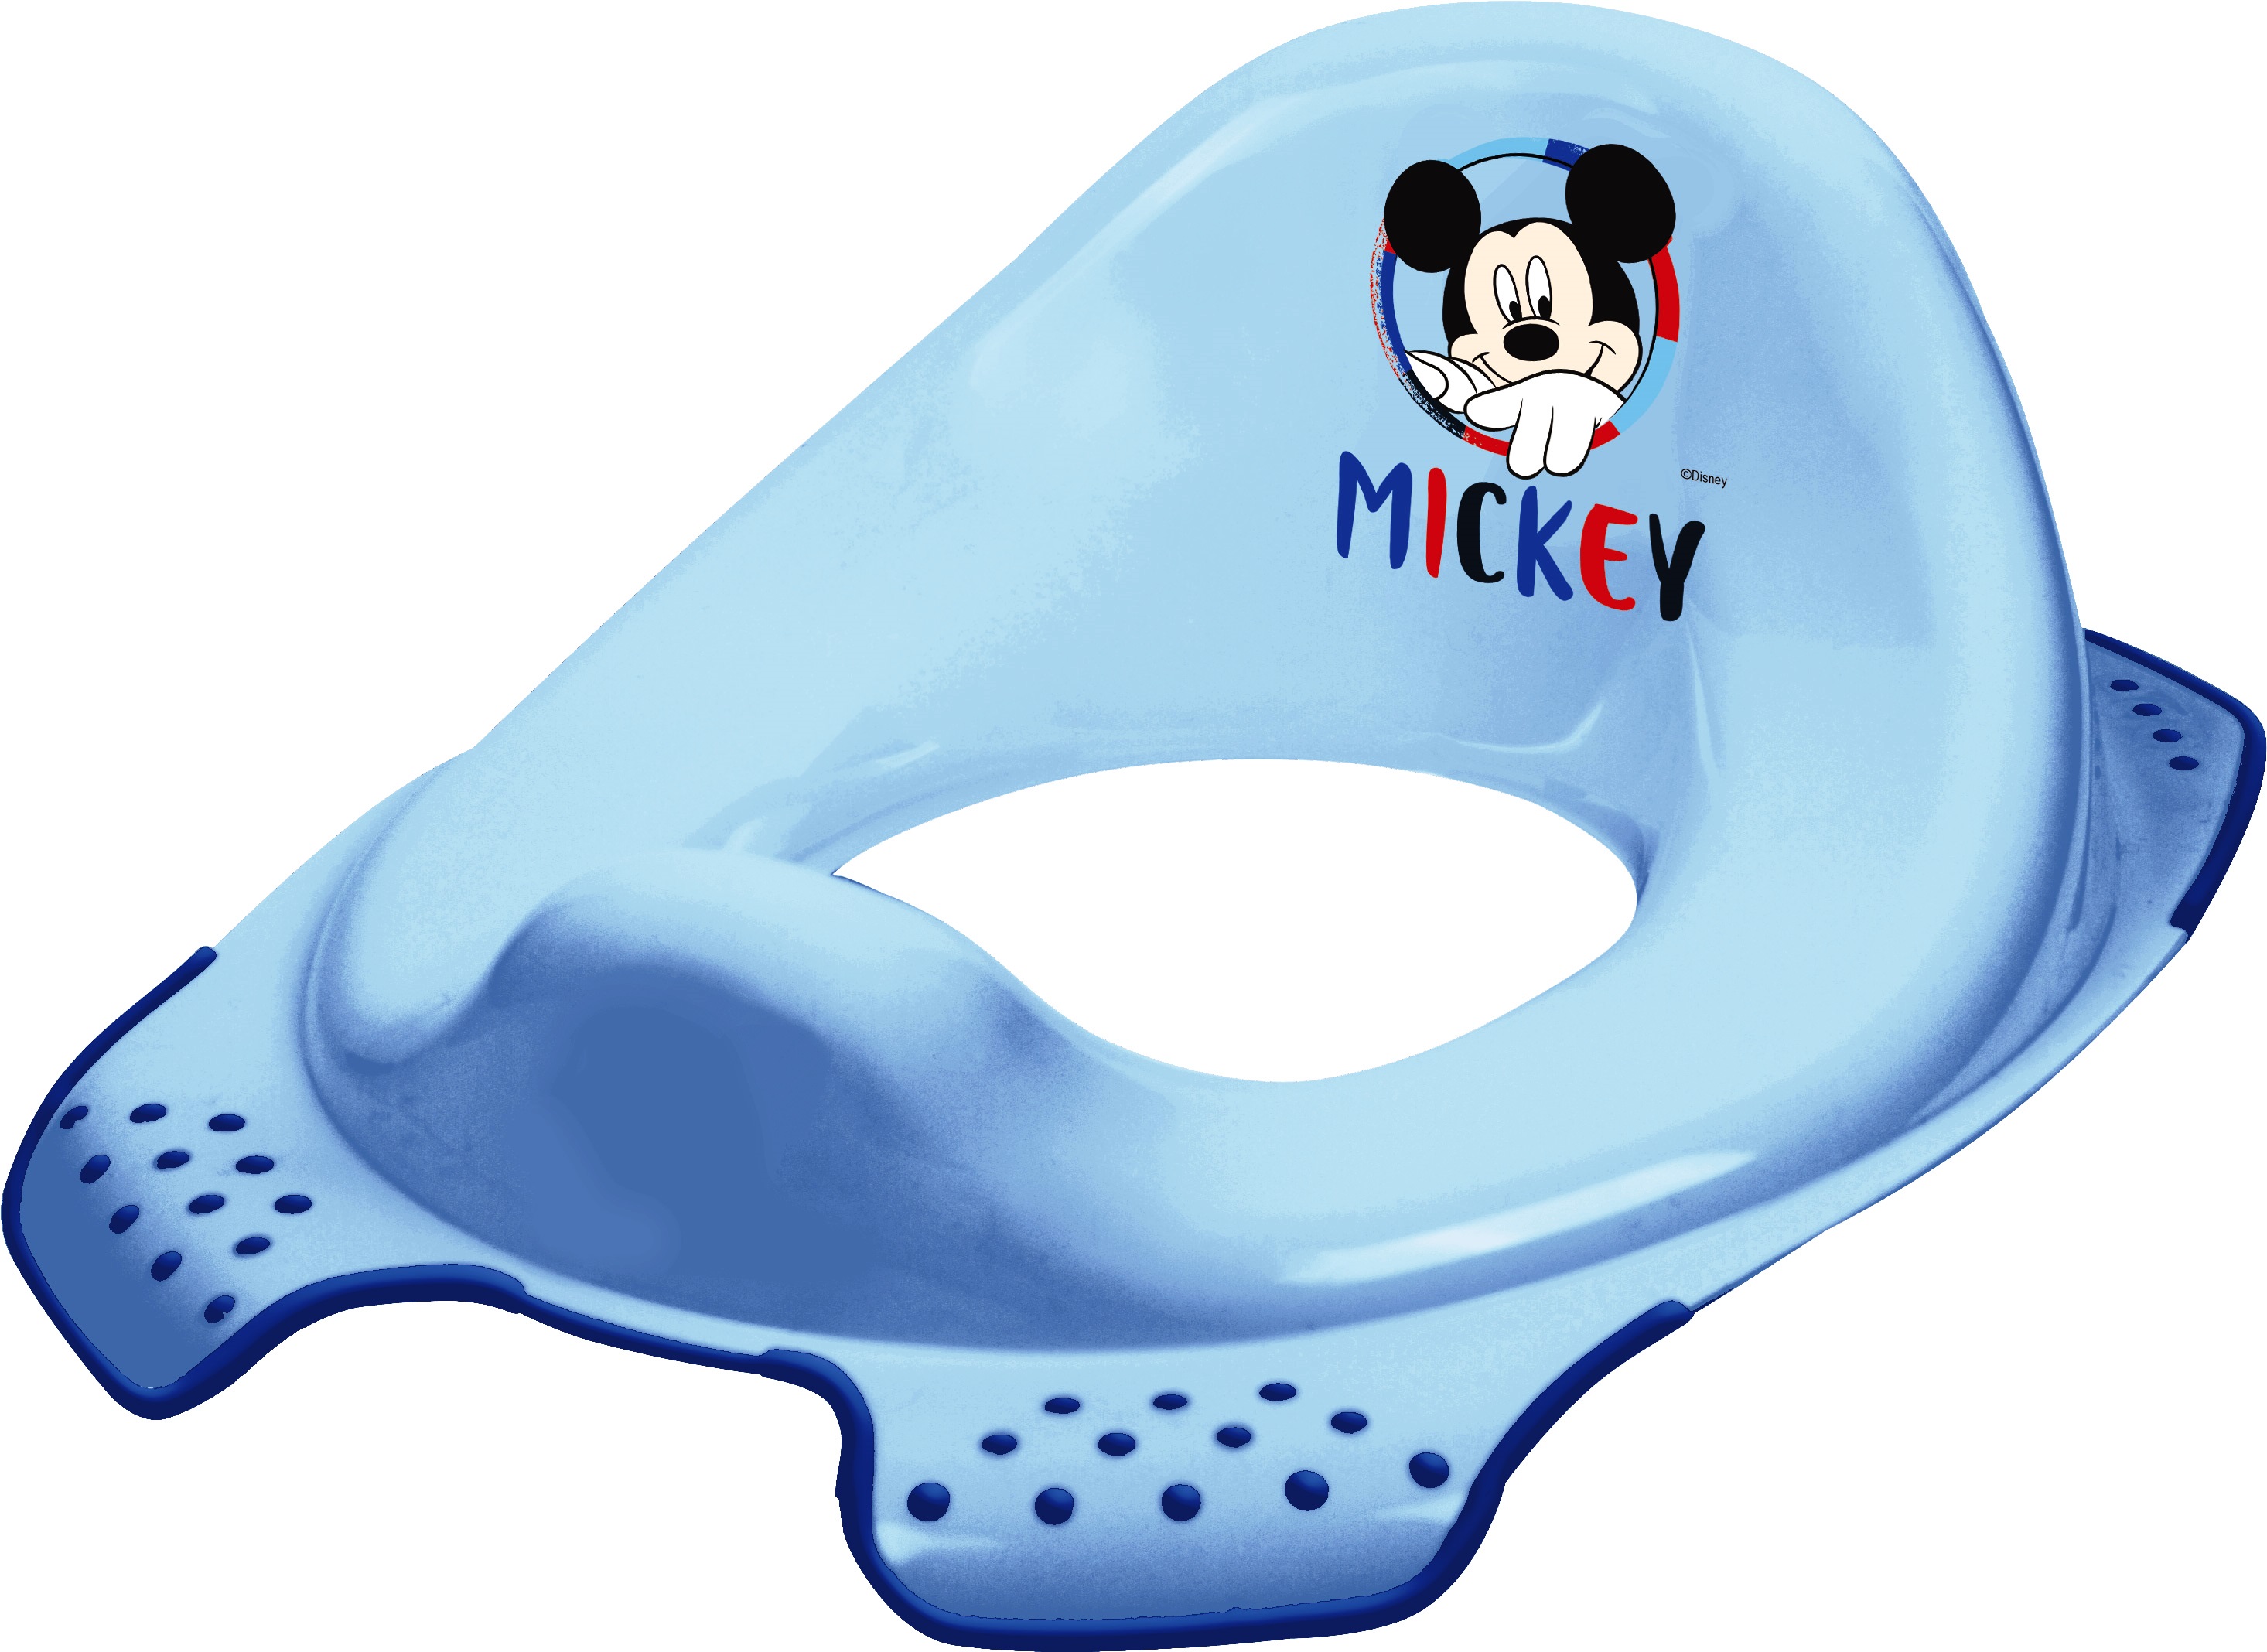 Reducteur toilette Mickey siege enfant Disney WC au meilleur prix